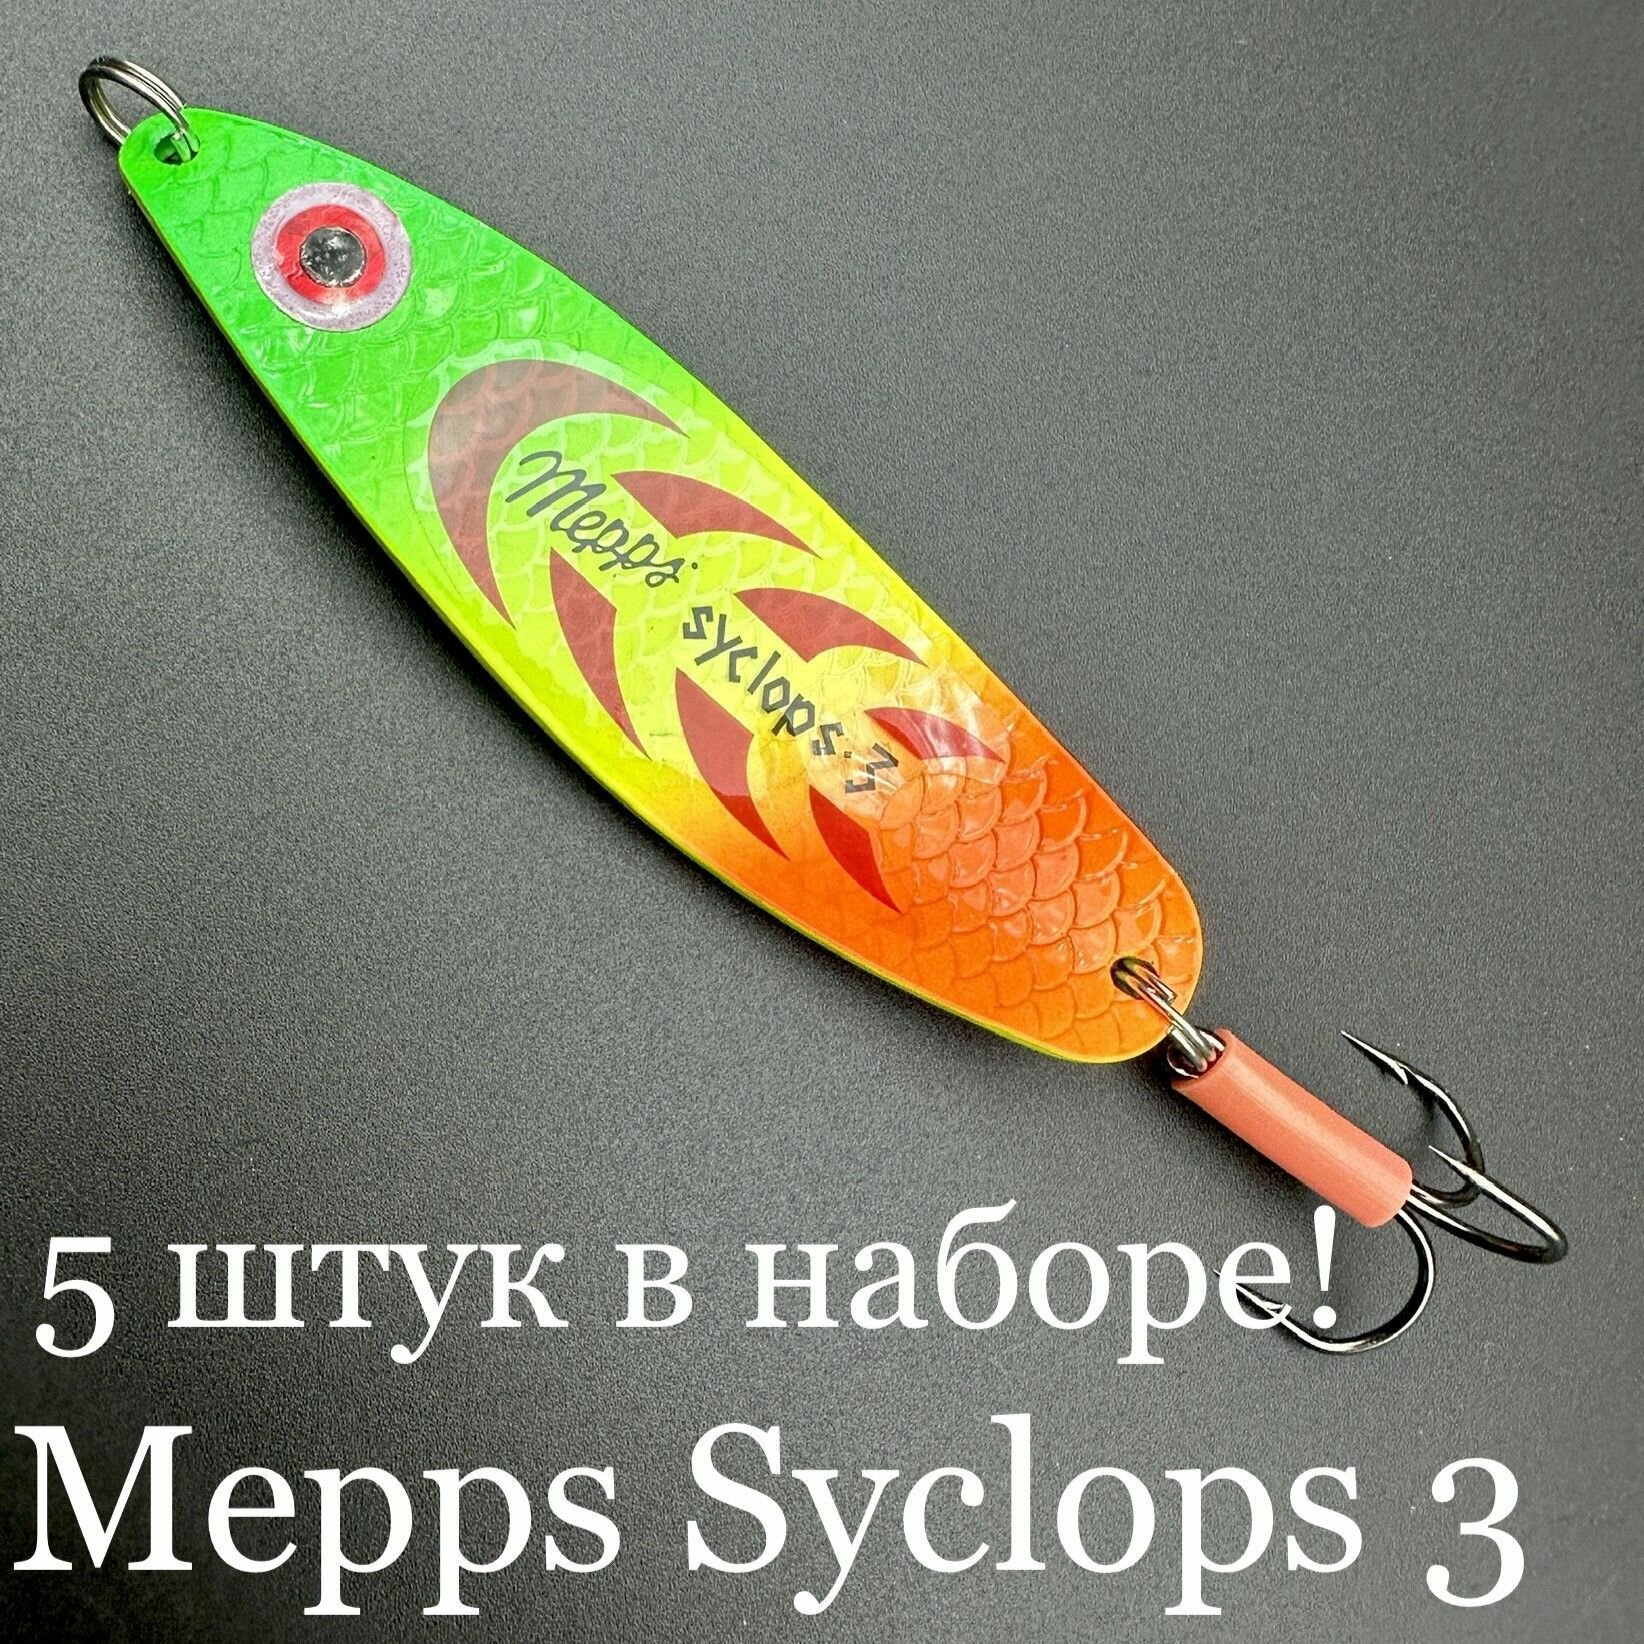 Набор из 5 блесен Mepps Syclops 3 26 грамм колебалок для рыбалки на хищника кумжу, семгу, лосось, окунь, щука, судак, берш сом сазан